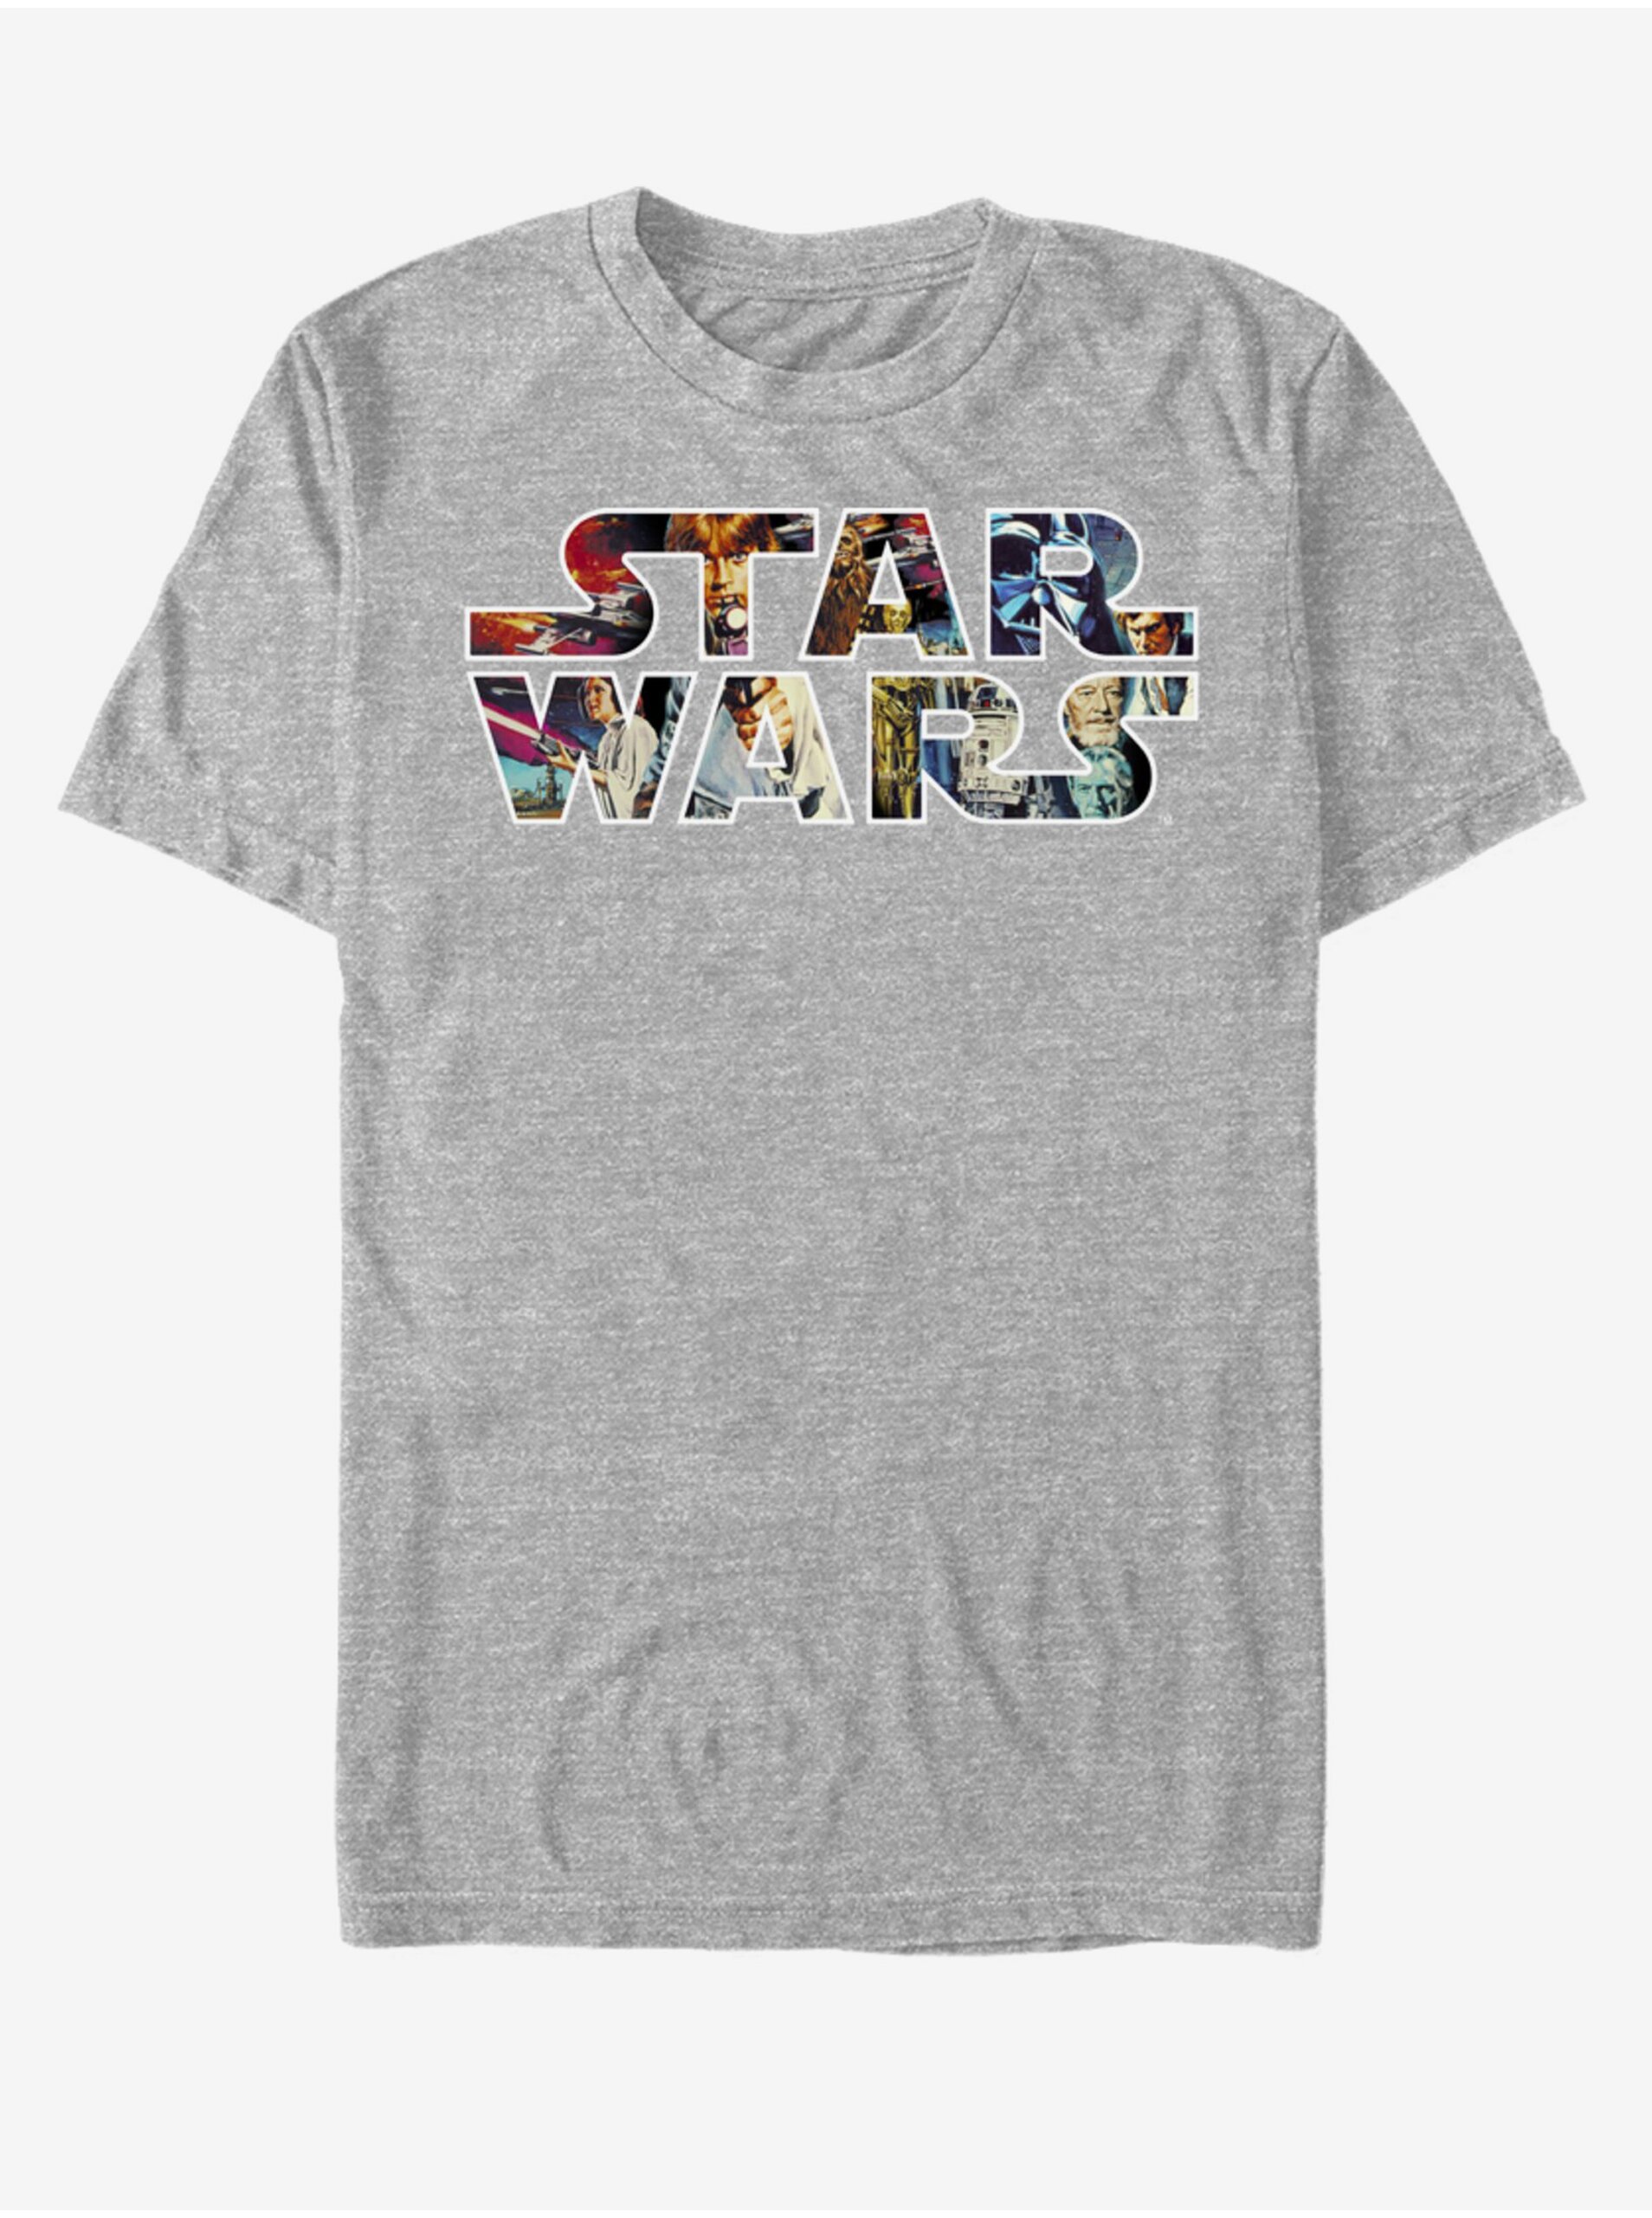 Lacno Šedé unisex melírované tričko ZOOT.Fan Star Wars Epic Logo